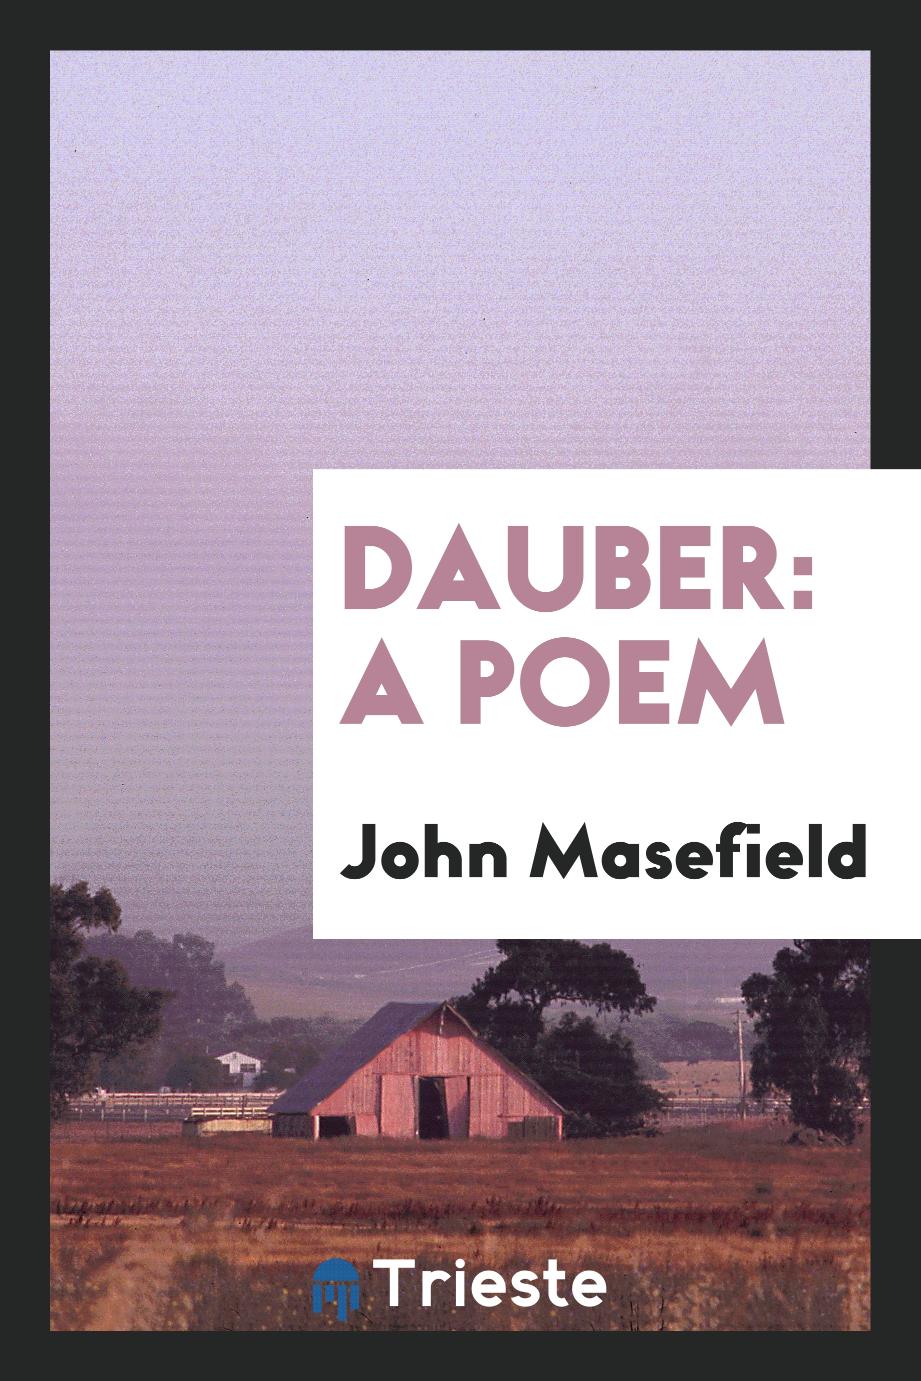 Dauber: a poem